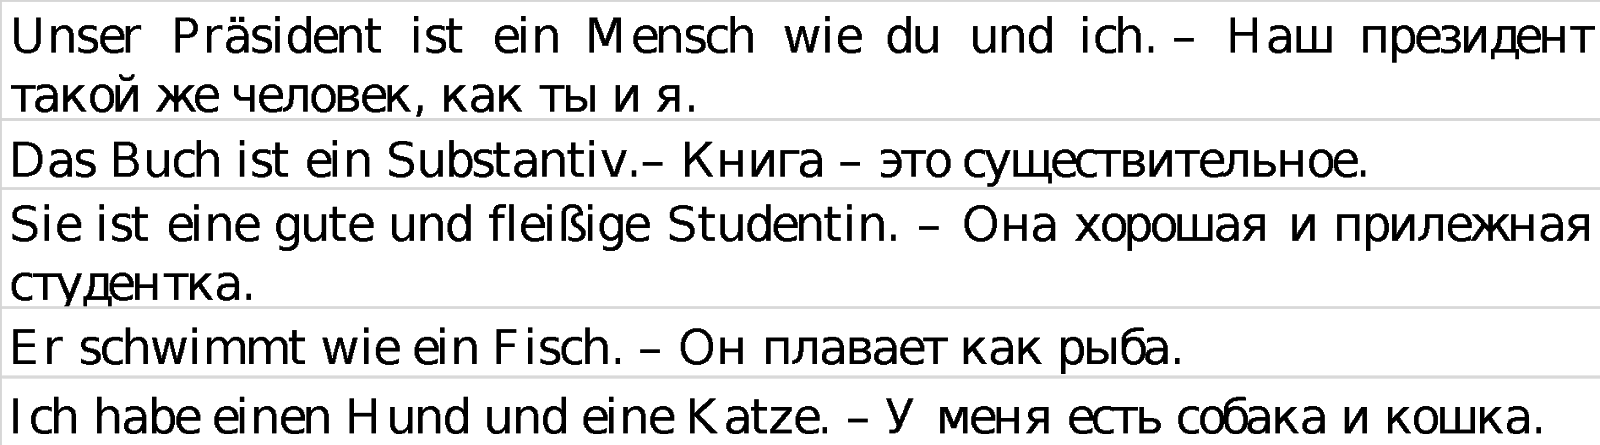 артикли в немецком языке таблица